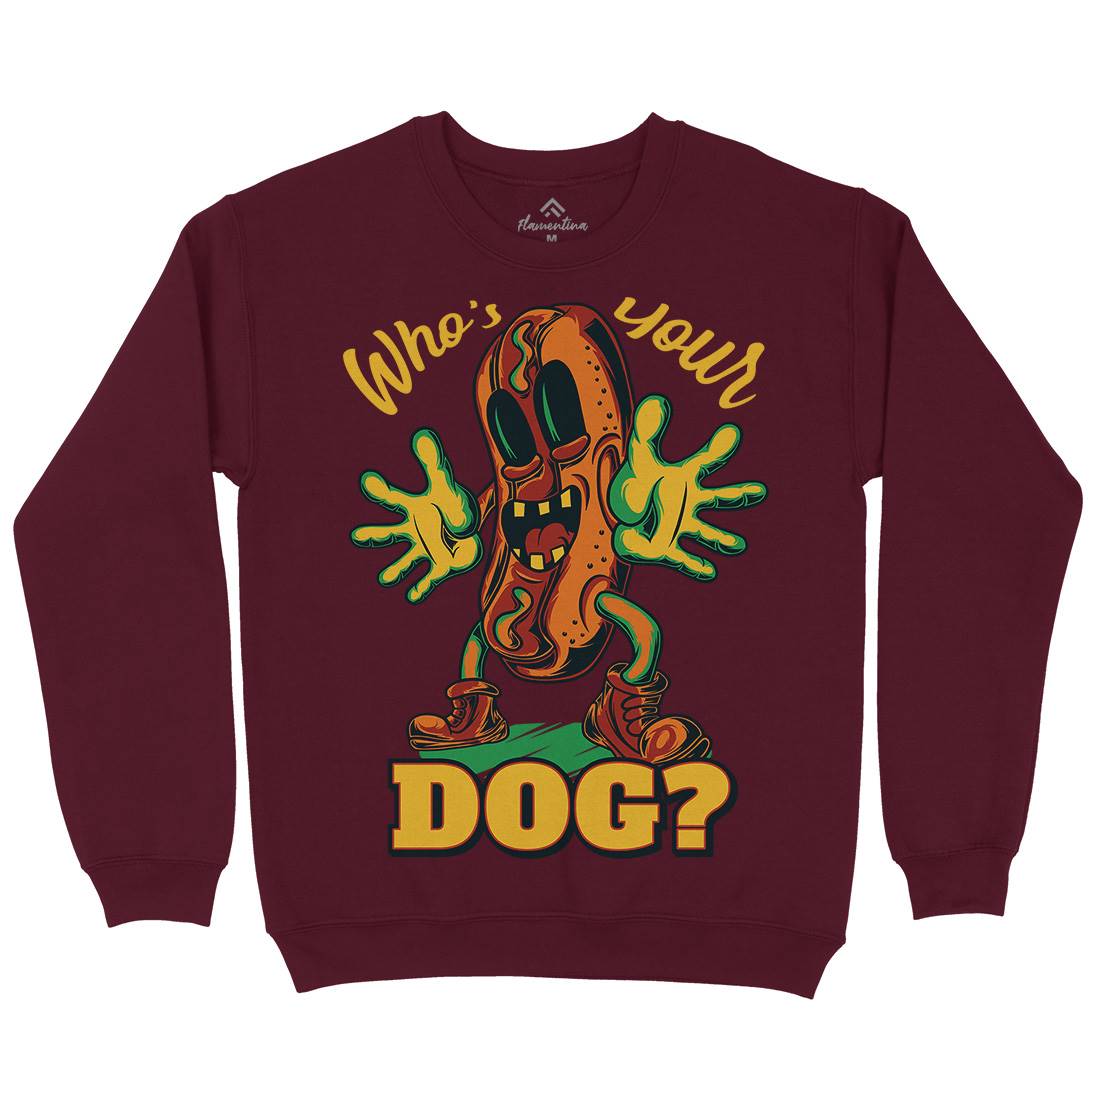 Hot Dog Kids Crew Neck Sweatshirt Food C822